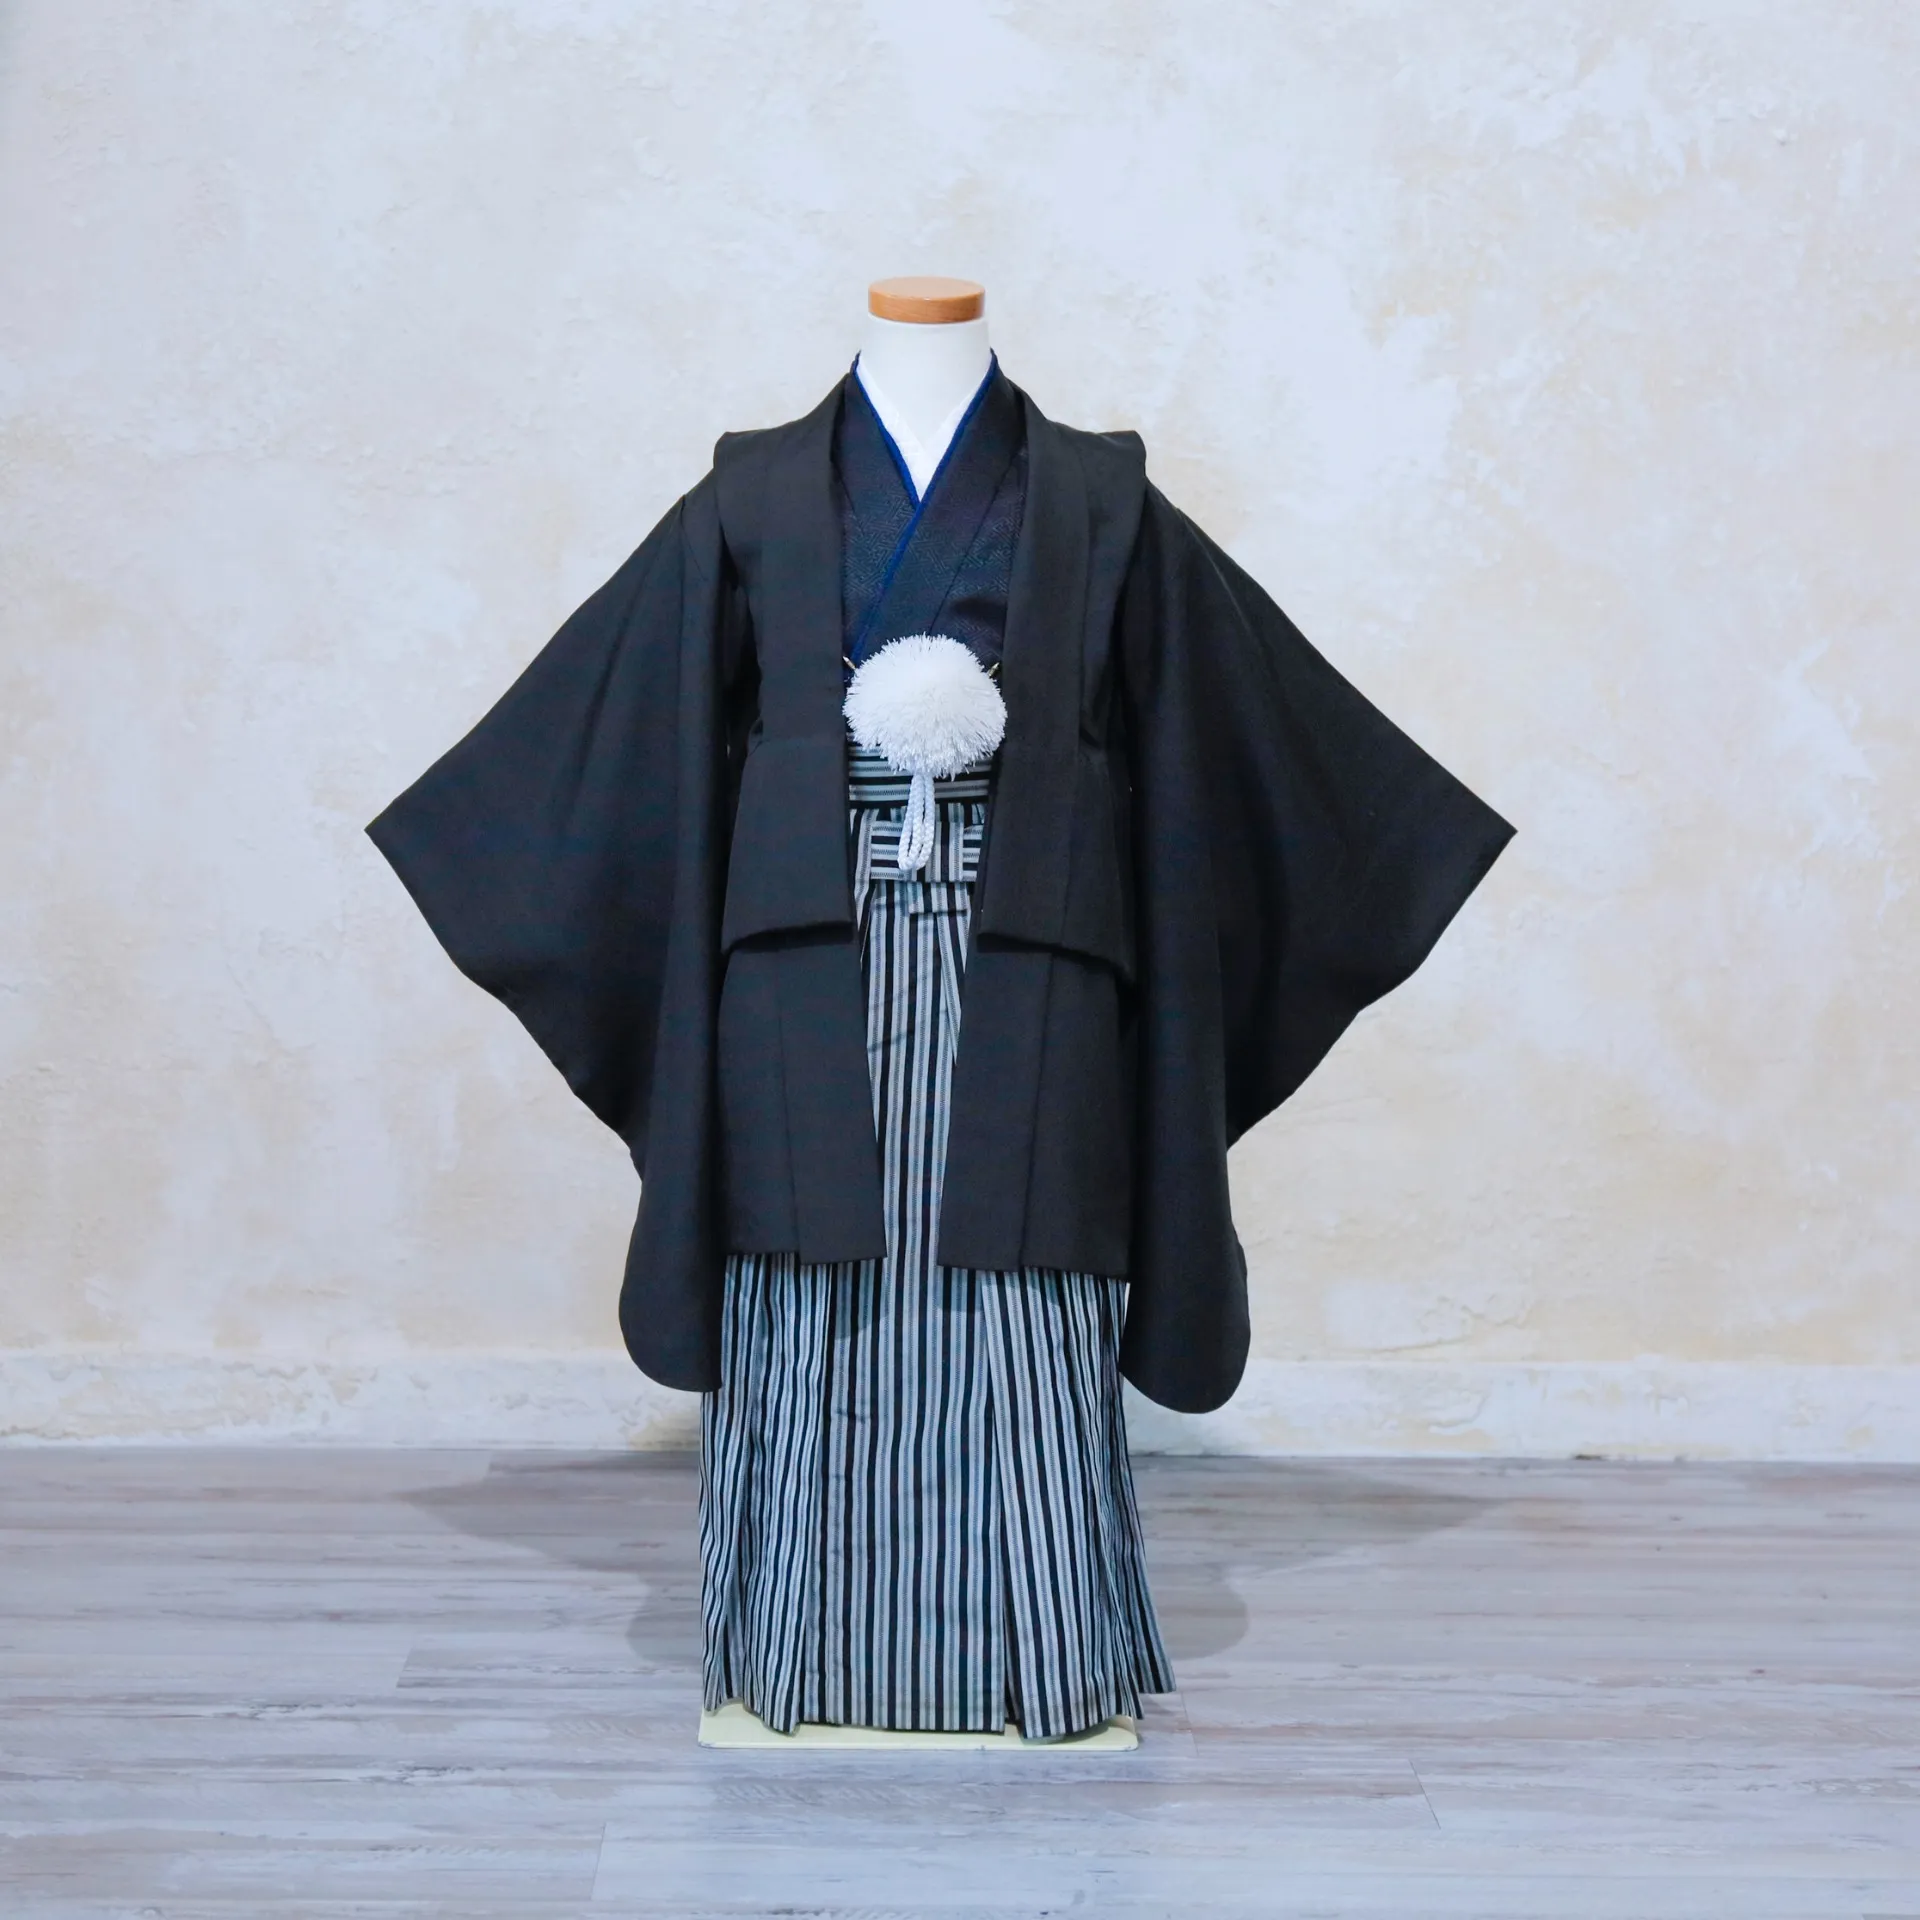 5.黒/羽織袴